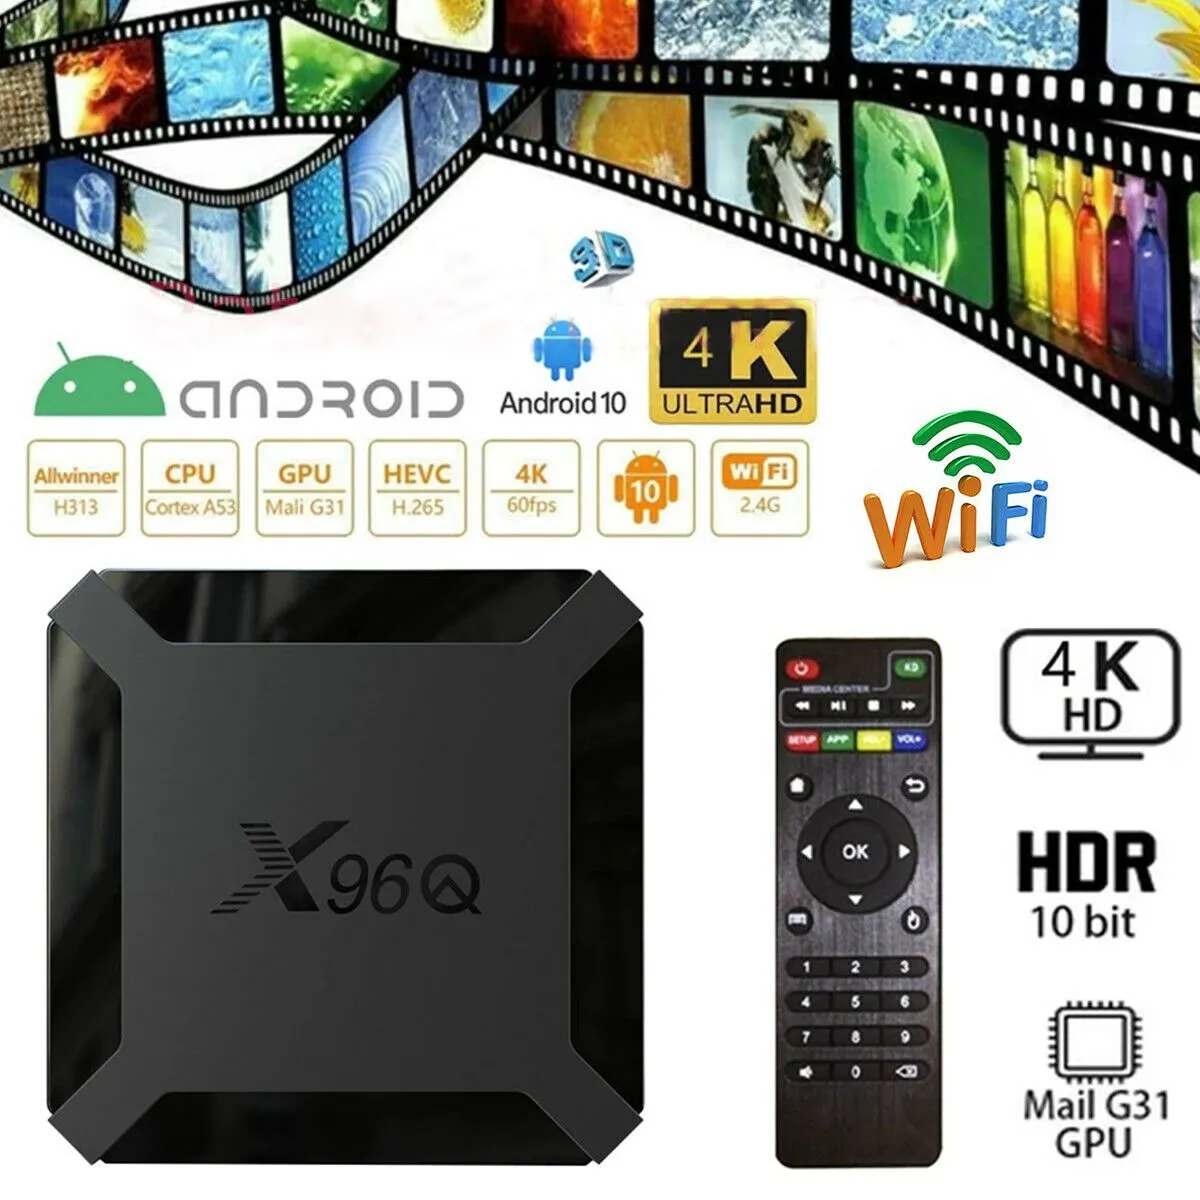 X96Q TV BOX ANDROID 10.0 AllWinner H313 1G 8G/2GB 16GBスマートメディアプレーヤー2.4G WiFi 4K 100M LAN VS X96 MINI